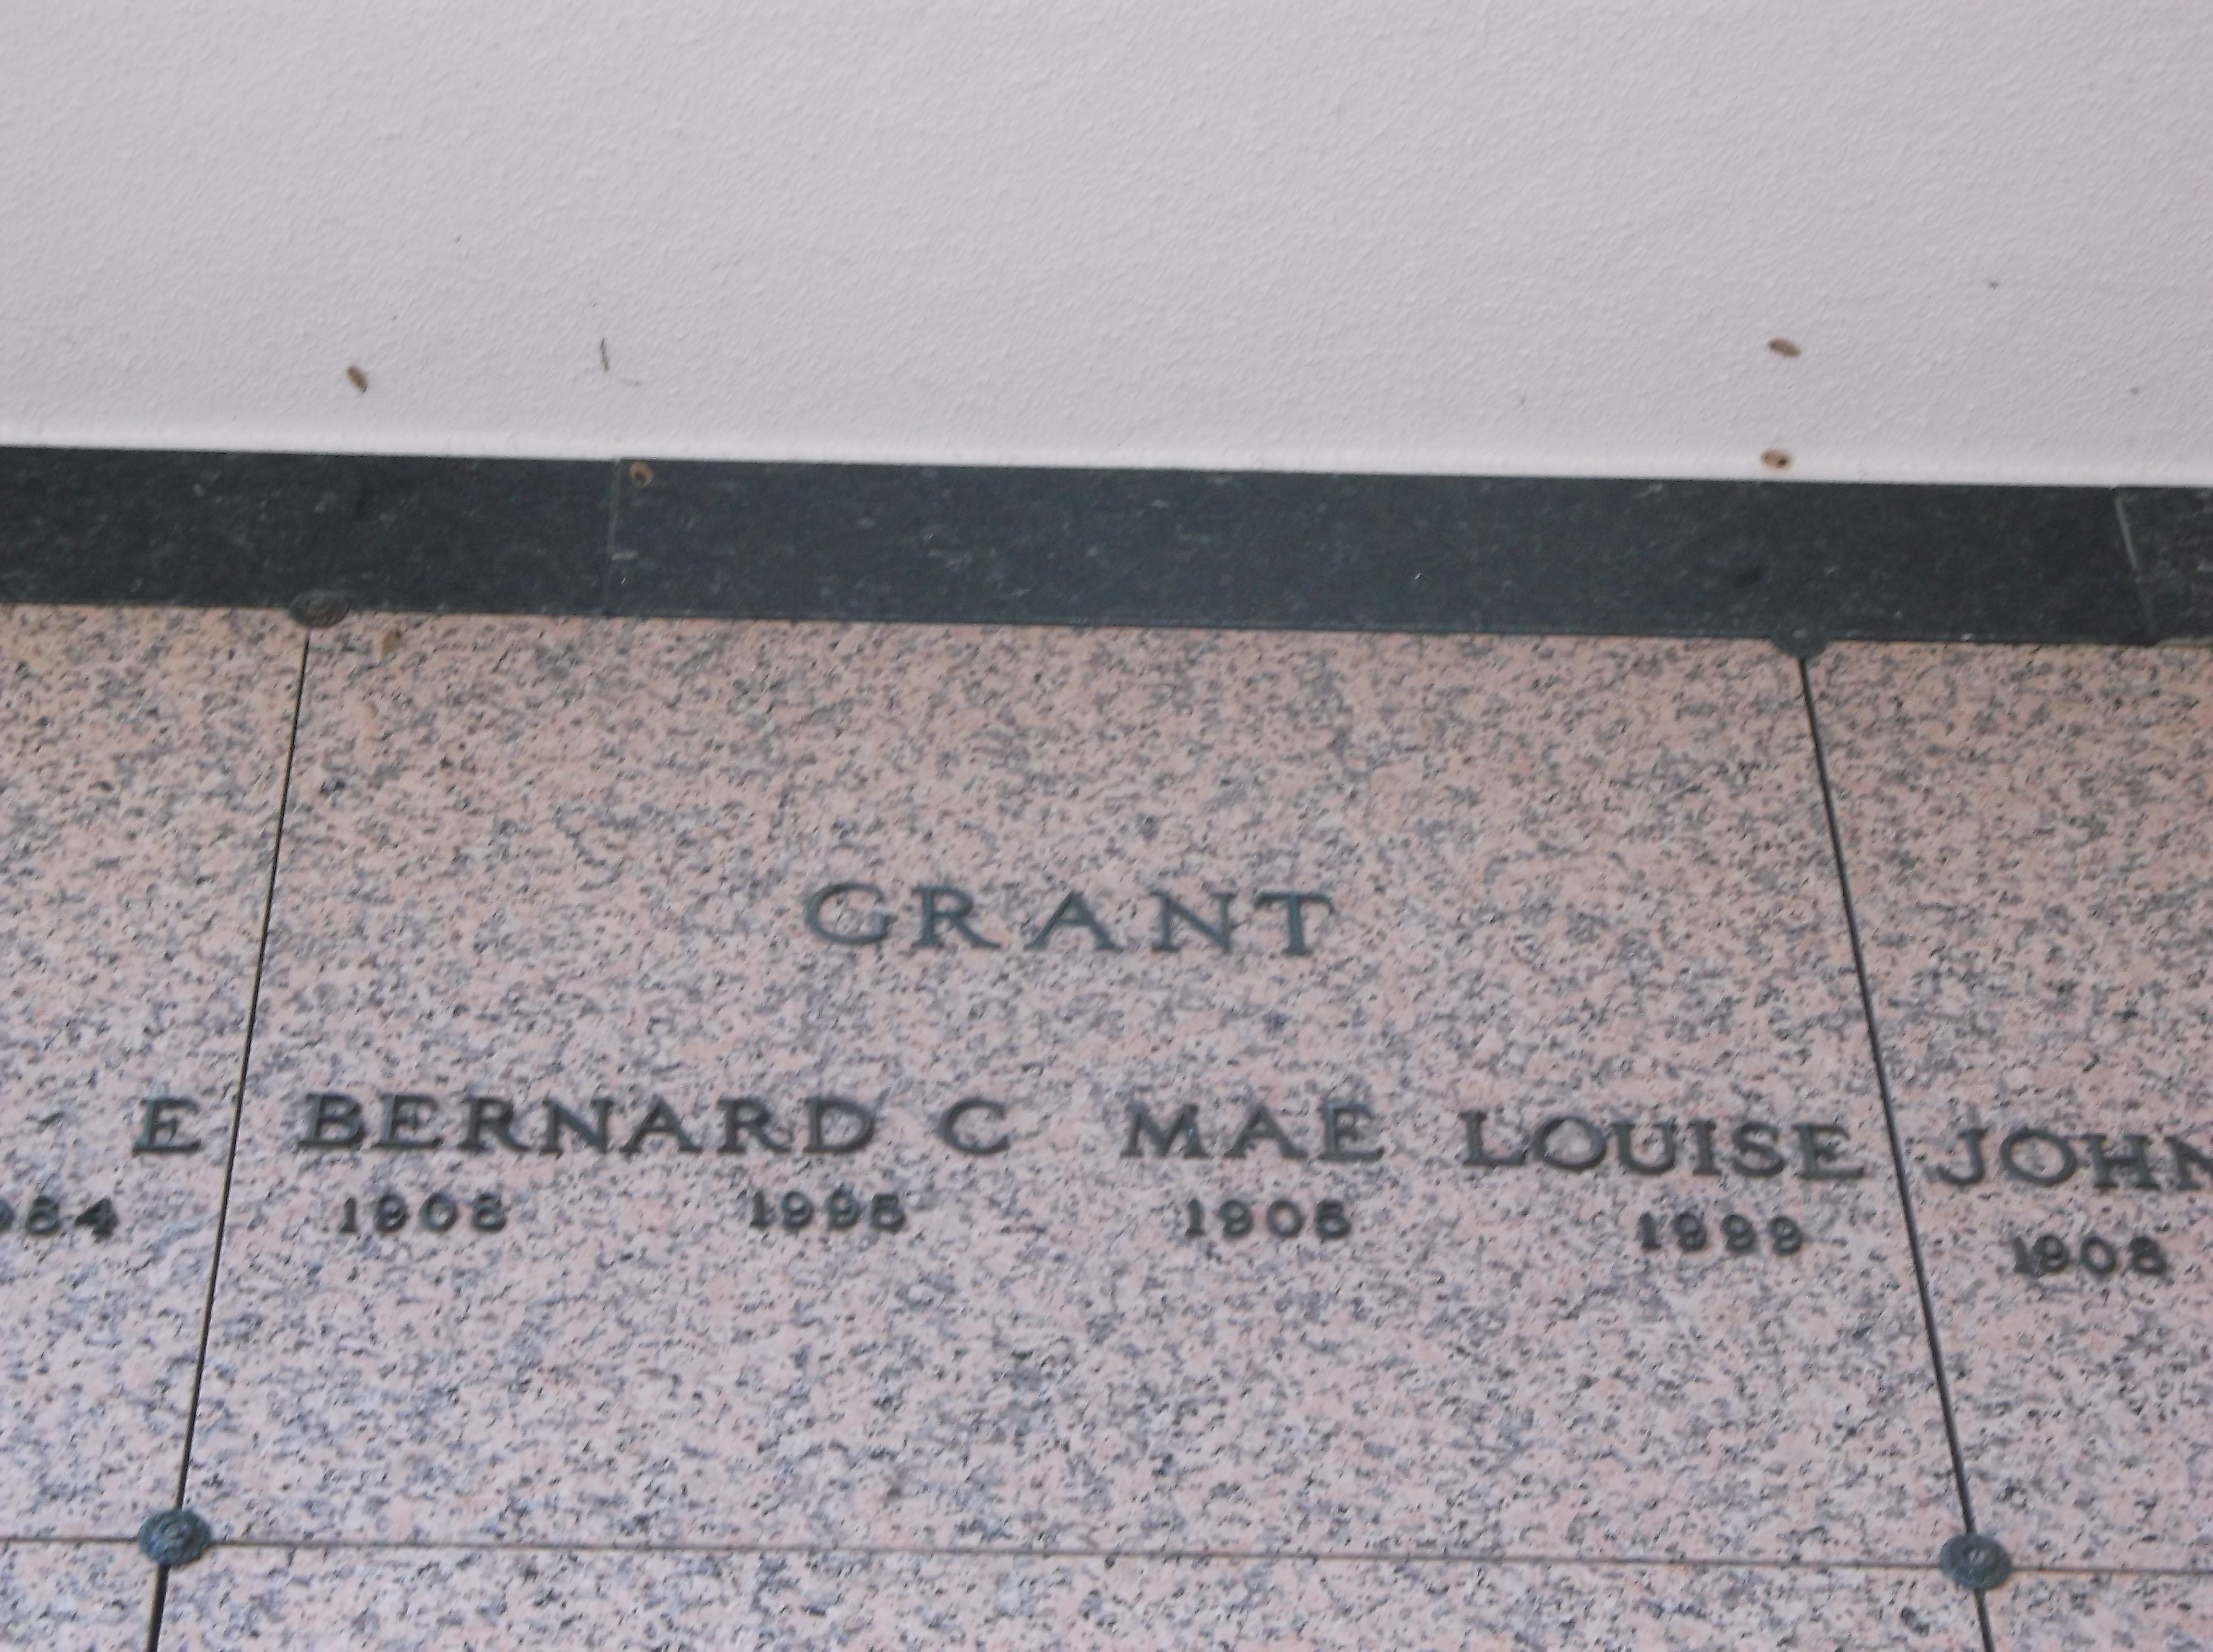 Bernard C Grant